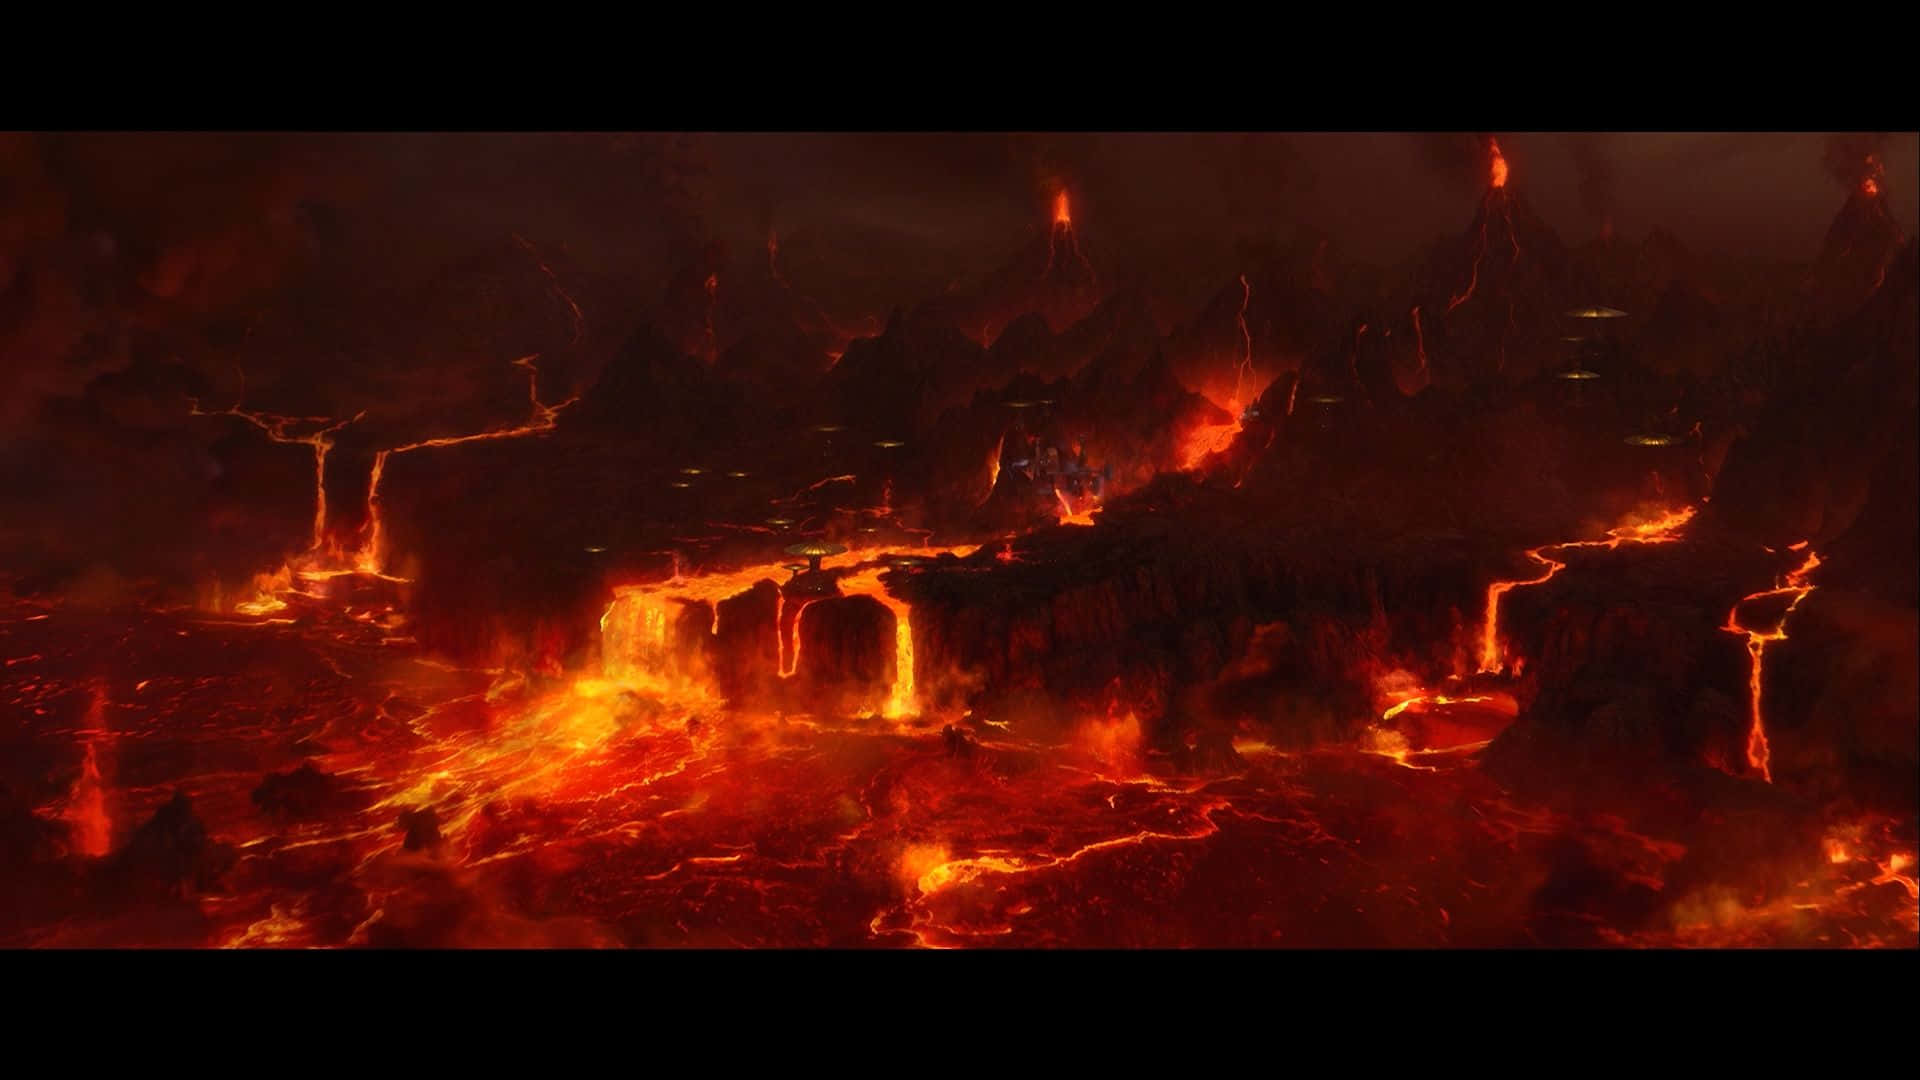 Fiery lava flows on the planet Mustafar Wallpaper